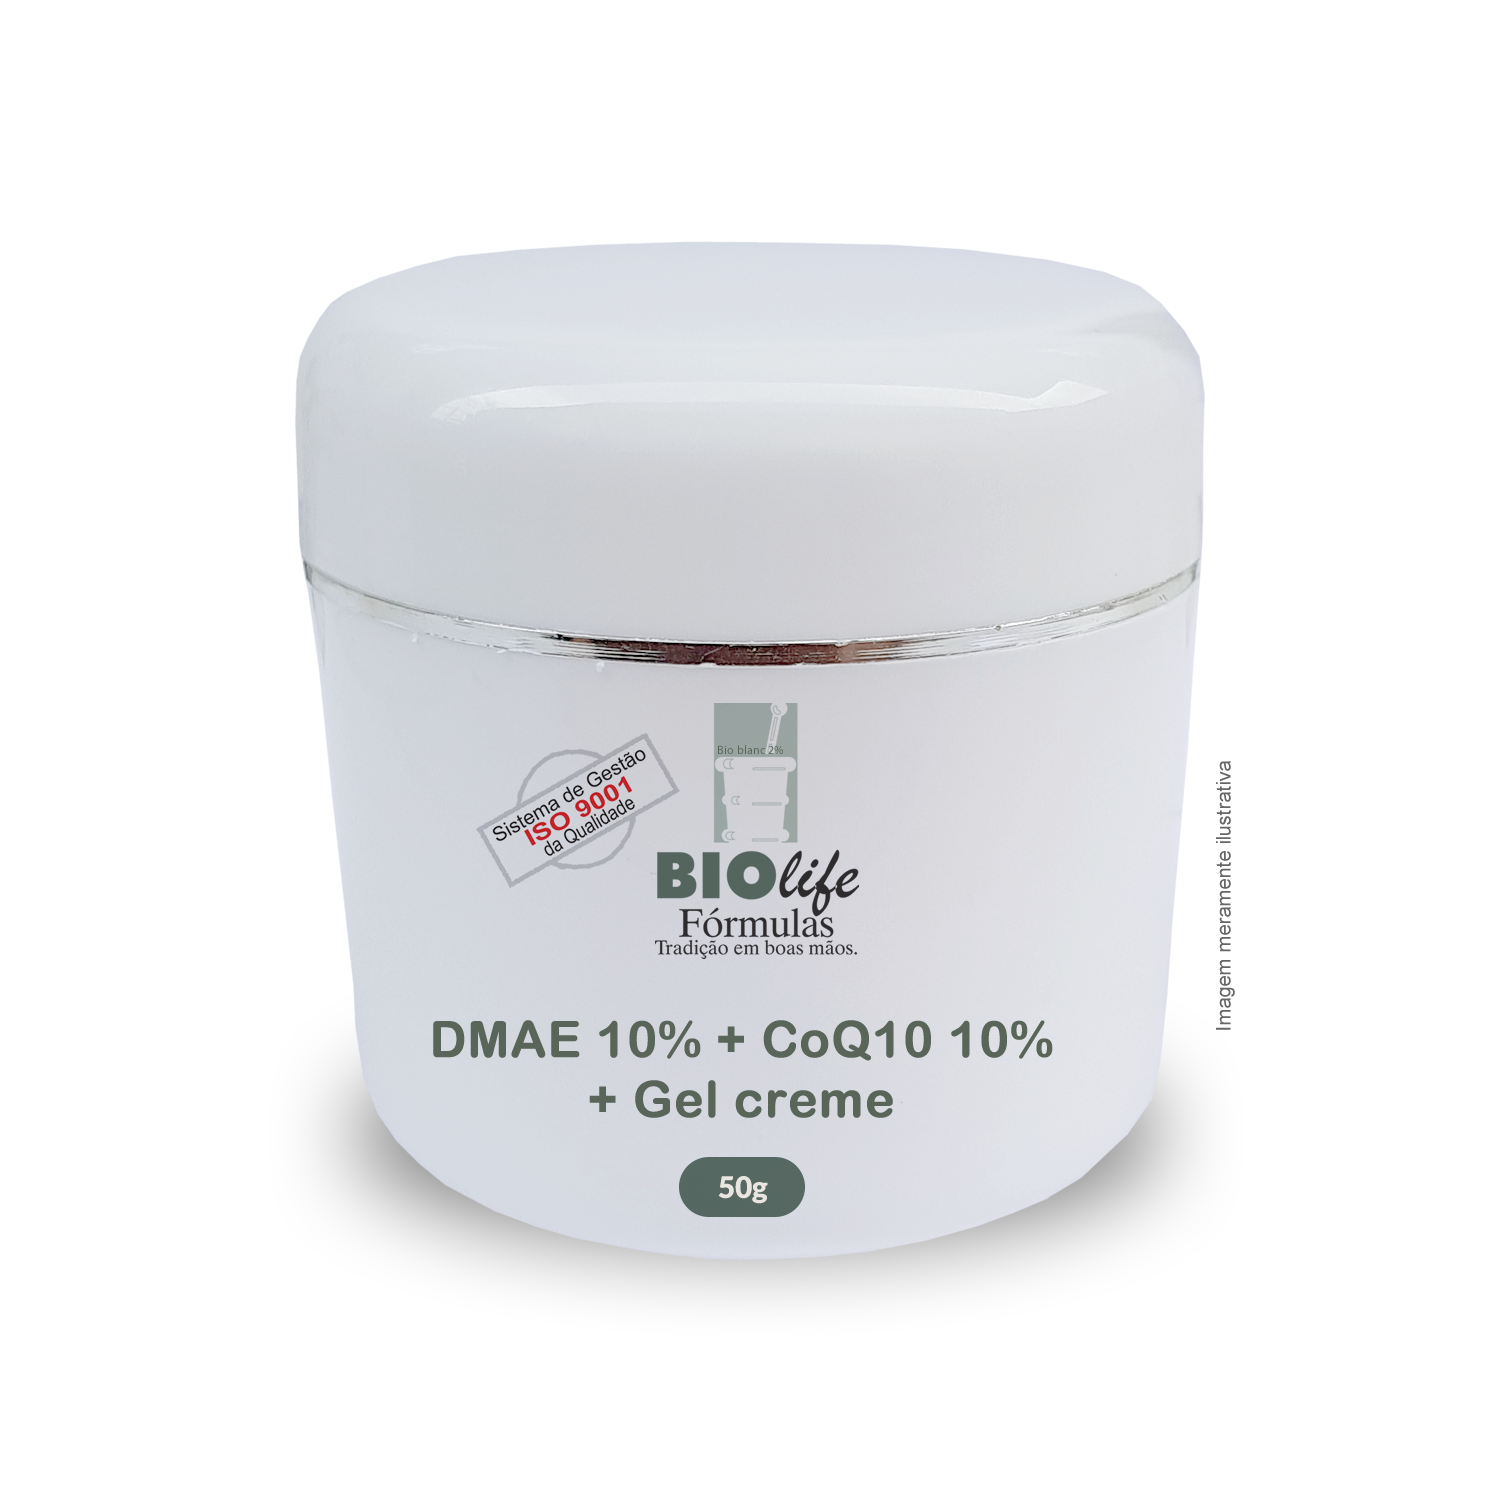 Biosome DMAE 10% + Lipossomas CoQ10 10% + Gel creme qsp 50g - BioLife